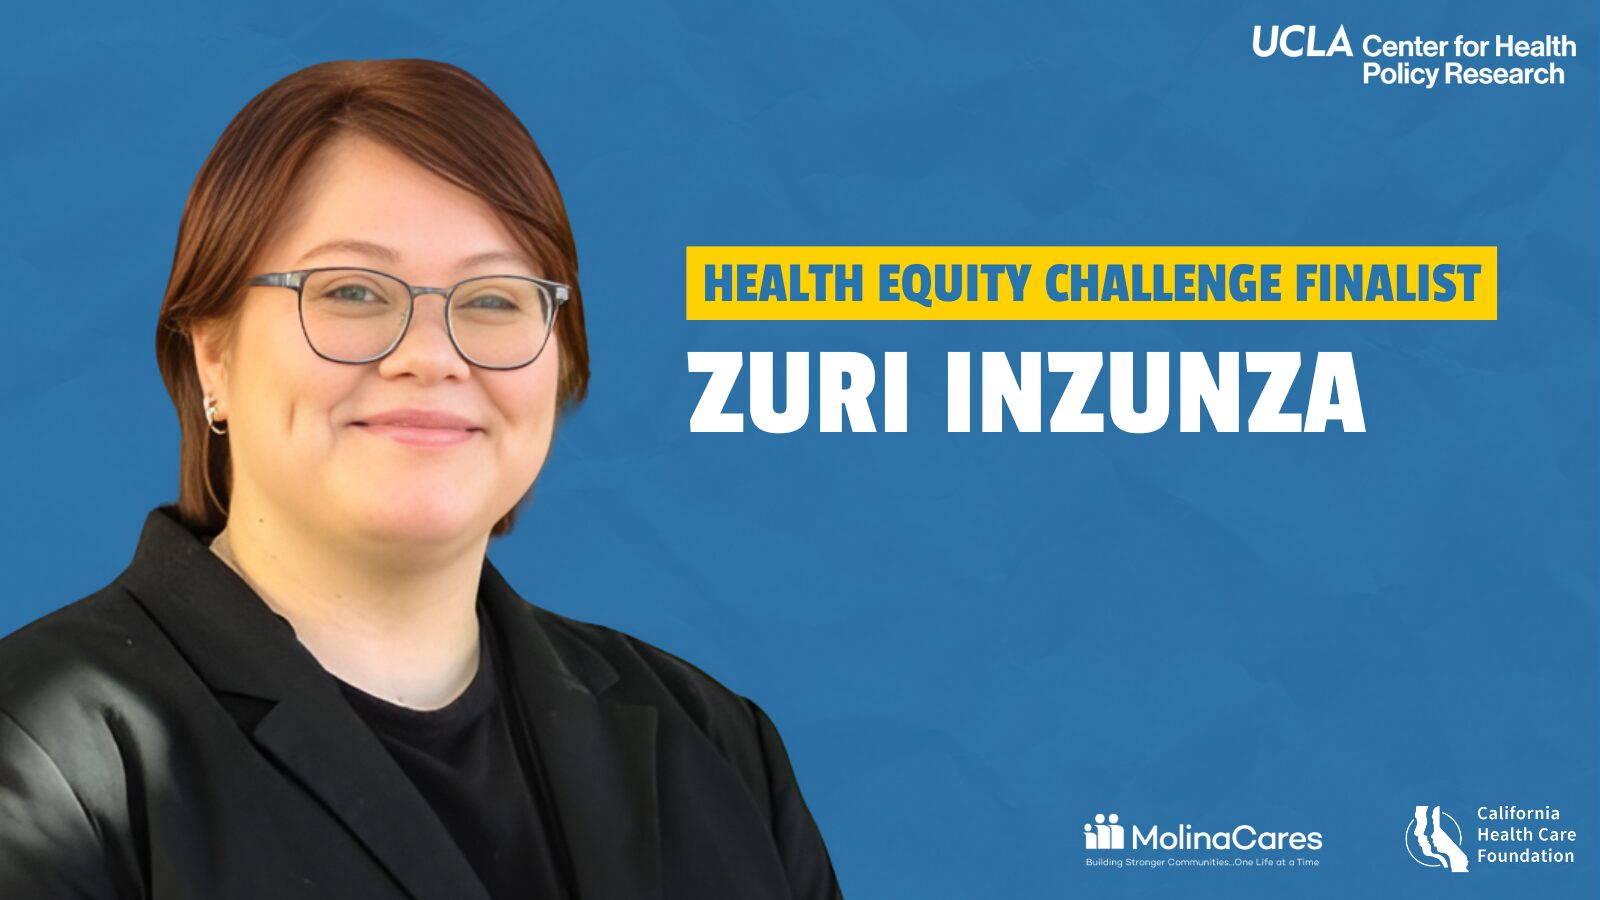 Health Equity Challenge Finalist Zuri Insunza